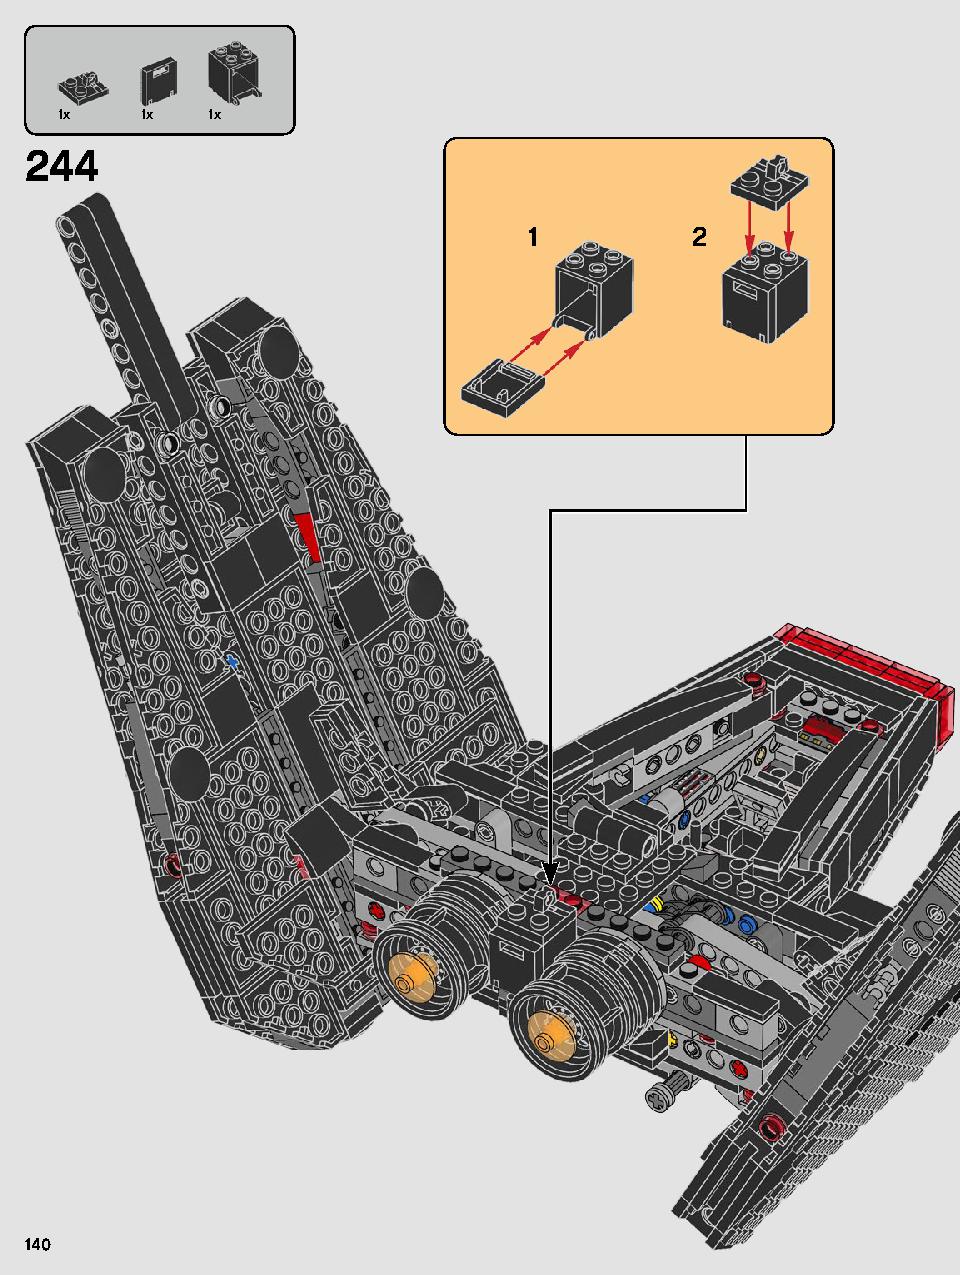 스타워즈 카일로 렌의 셔틀™ 75256 레고 세트 제품정보 레고 조립설명서 140 page